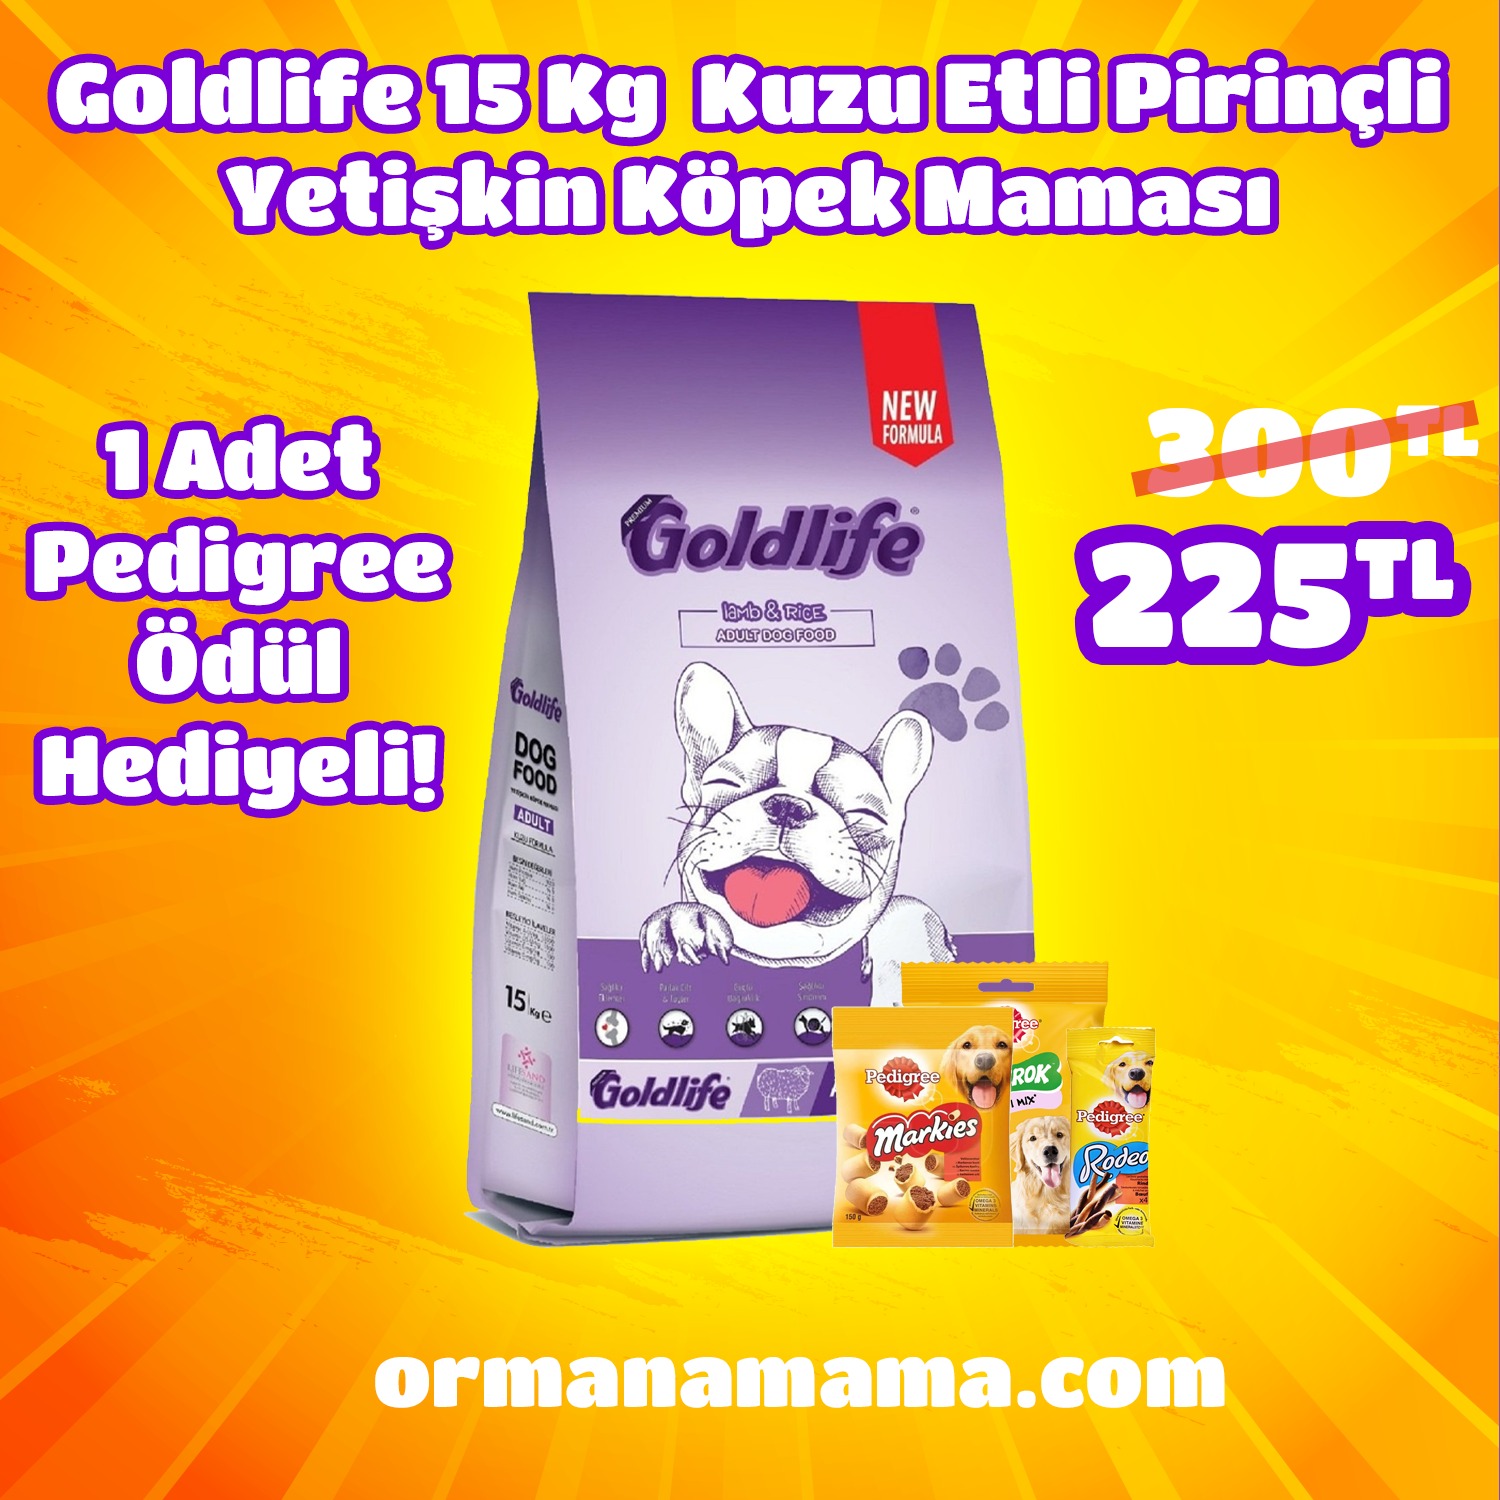 Goldlife Kuzu Etli Pirinçli Yetişkin Köpek Maması 15 Kg + 1 Adet Pedigree Ödül Maması Hediyeli